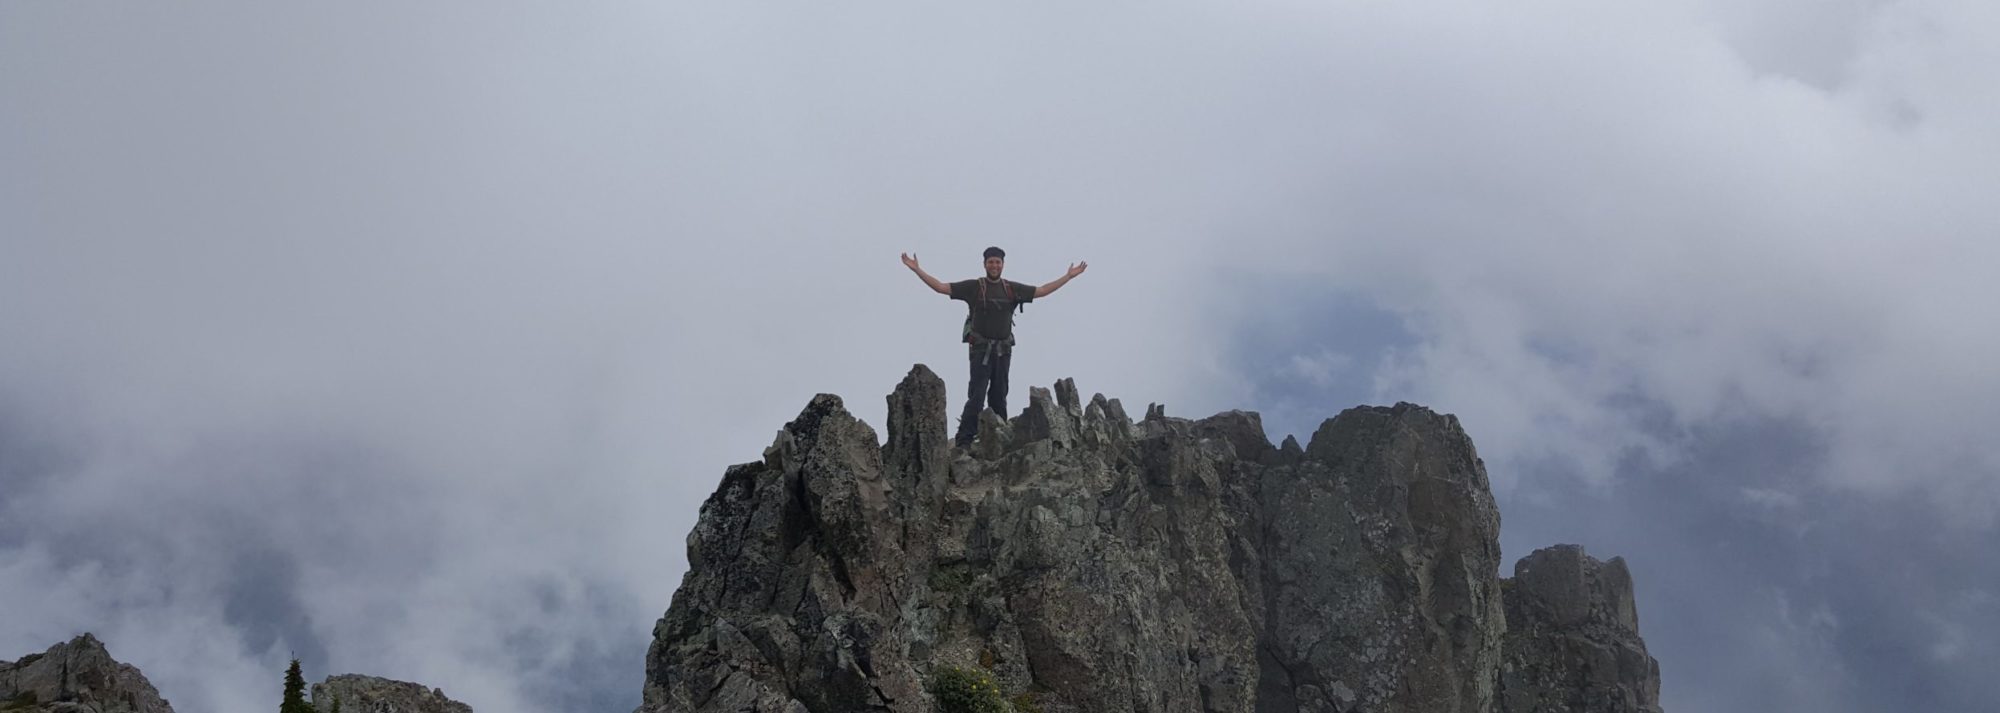 brandon standing on the summit of mount forgotten